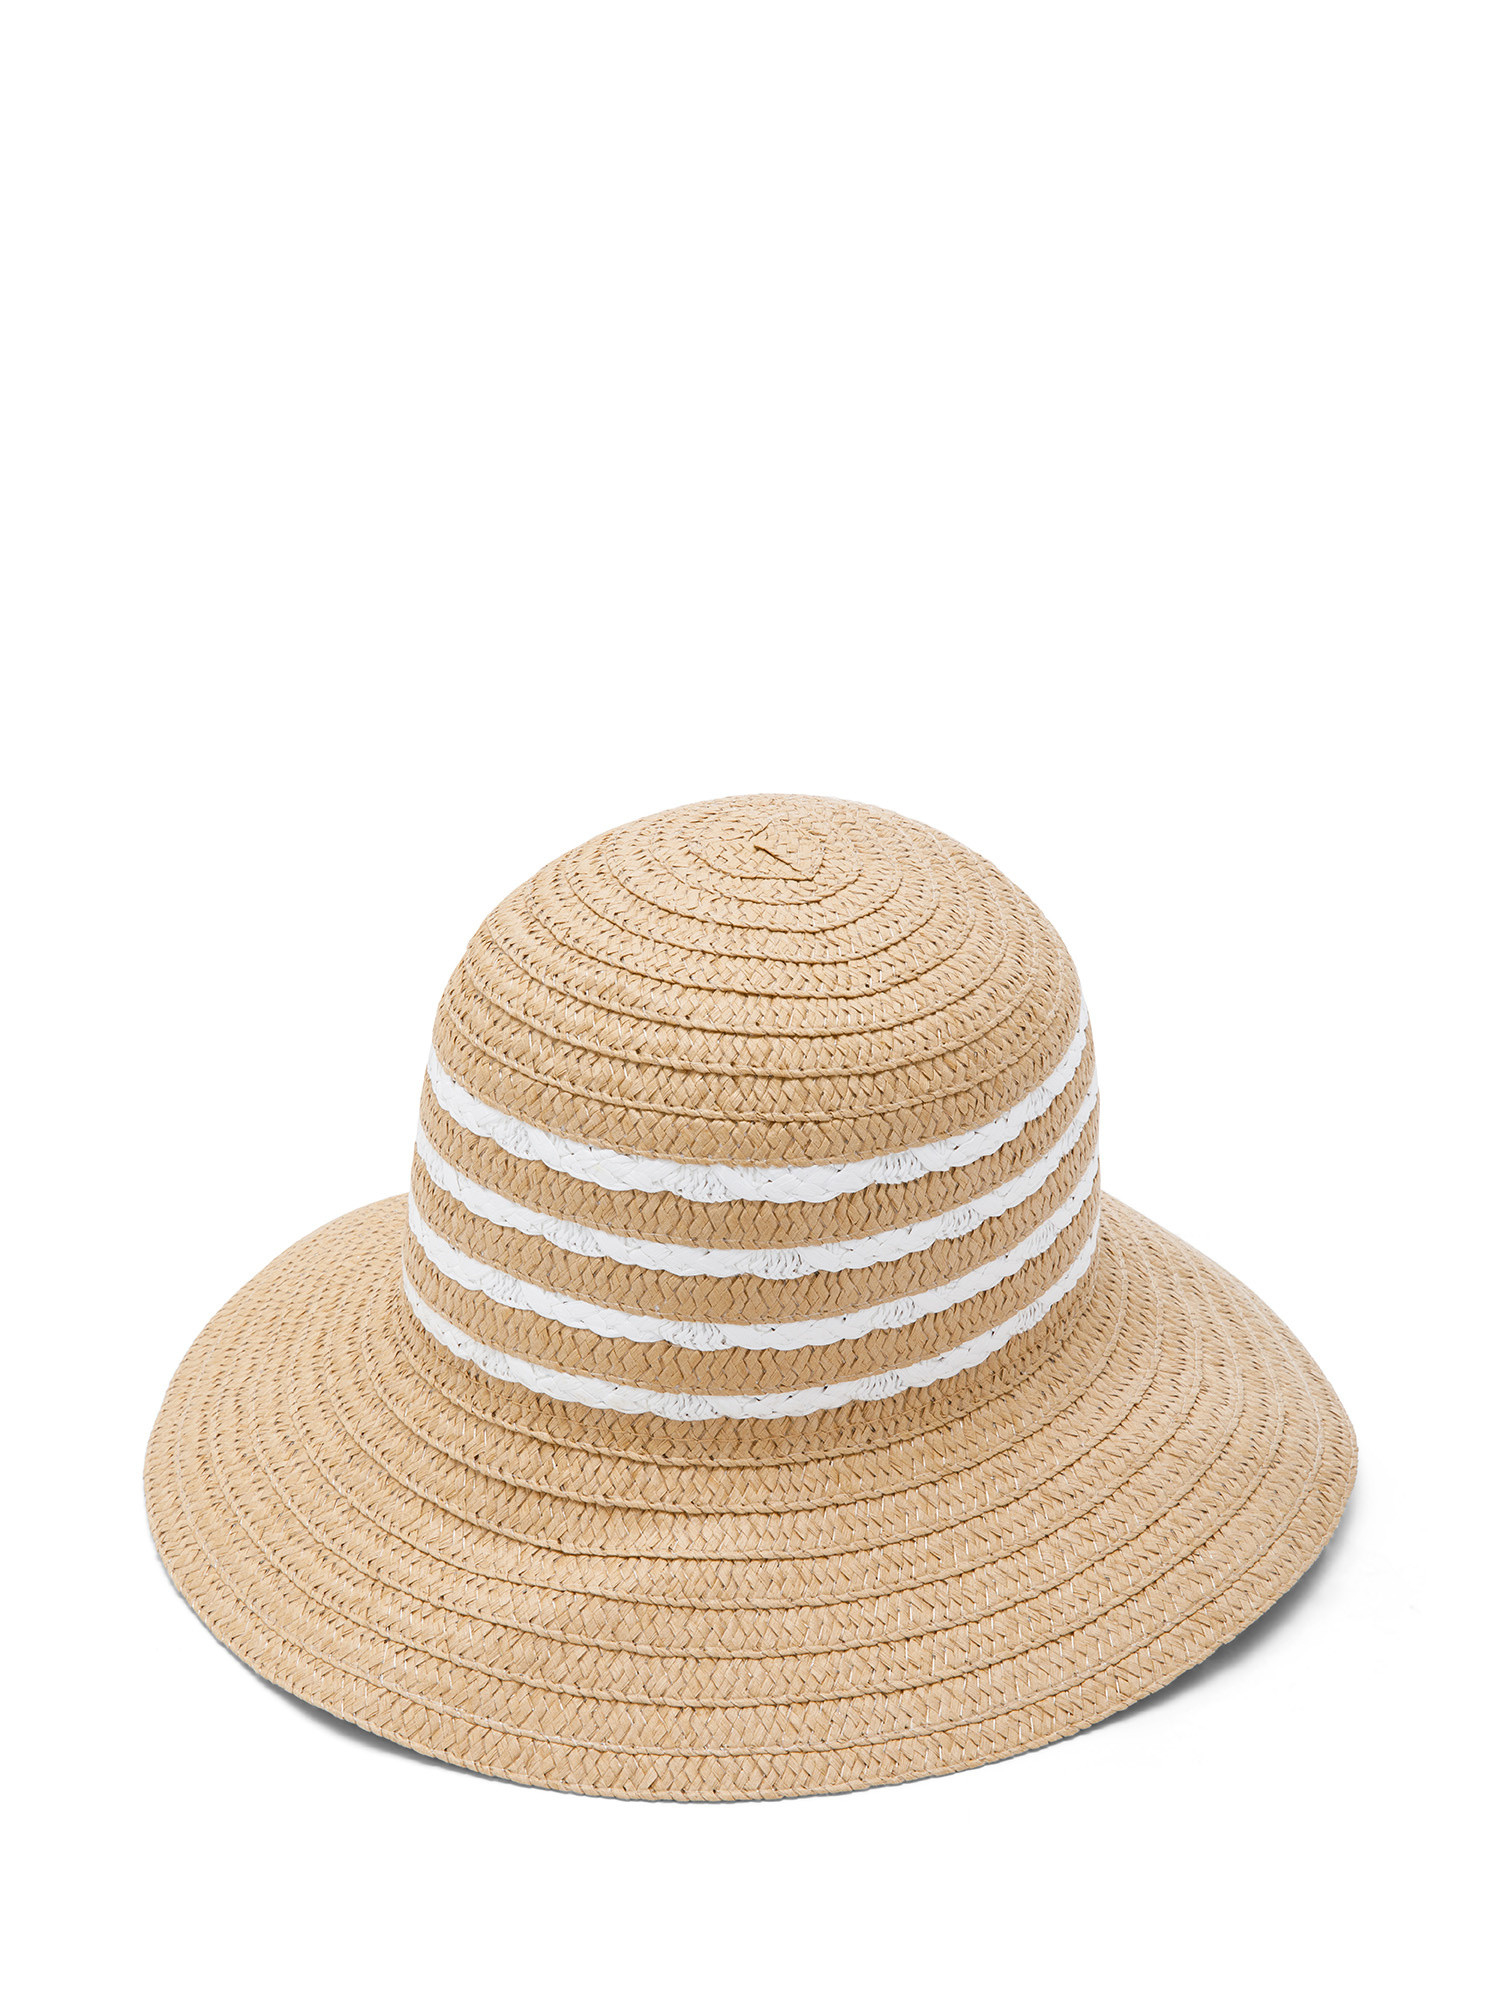 Koan - Striped hat, Beige, large image number 0